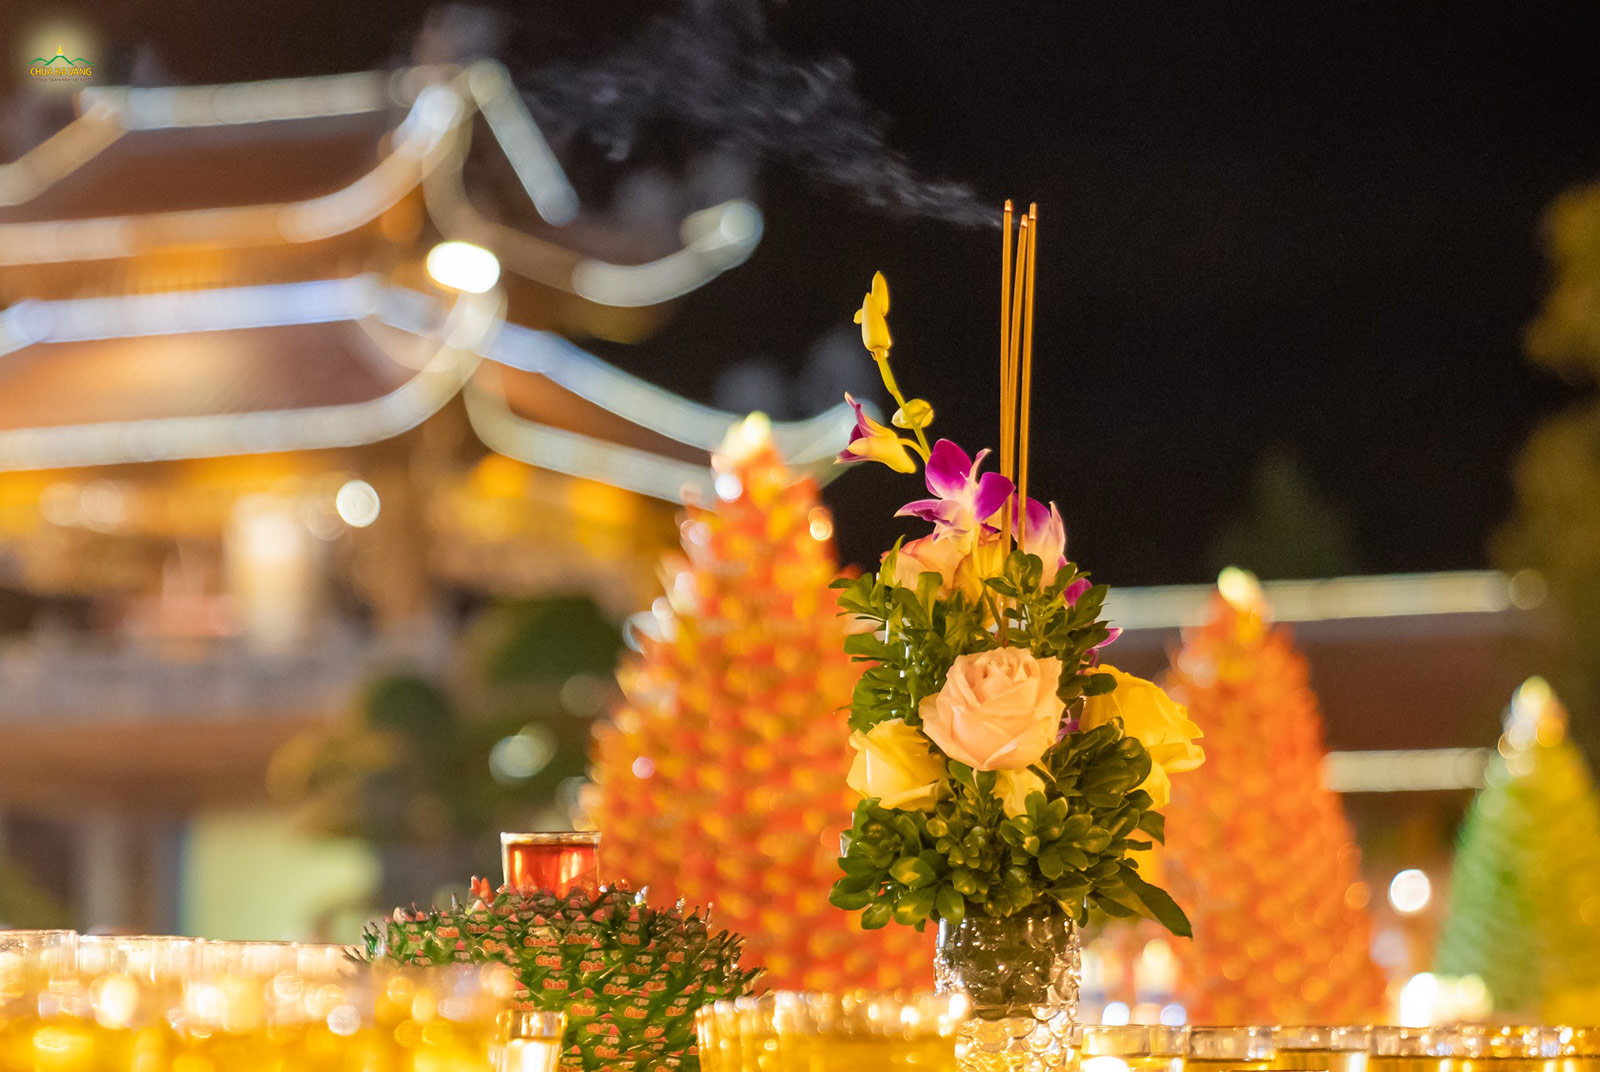   Hương hoa được các Phật tử chuẩn bị để dâng cúng trong đàn lễ chẩn tế Cầu siêu phả độ gia tiên.  